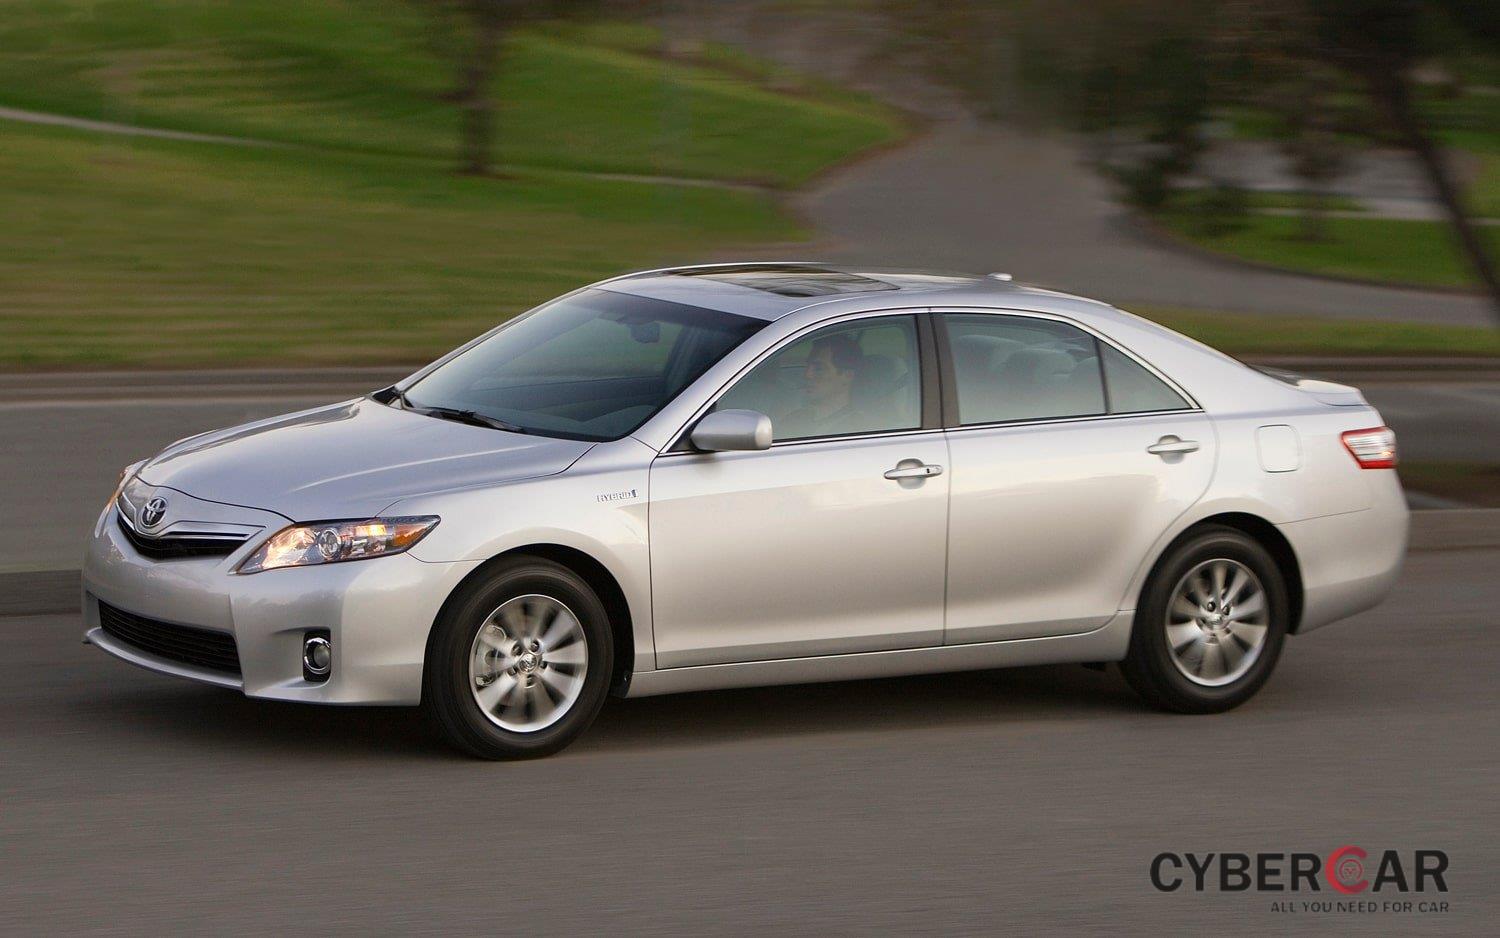 Toyota Camry 2011 đứng đầu về sự tin cậy.